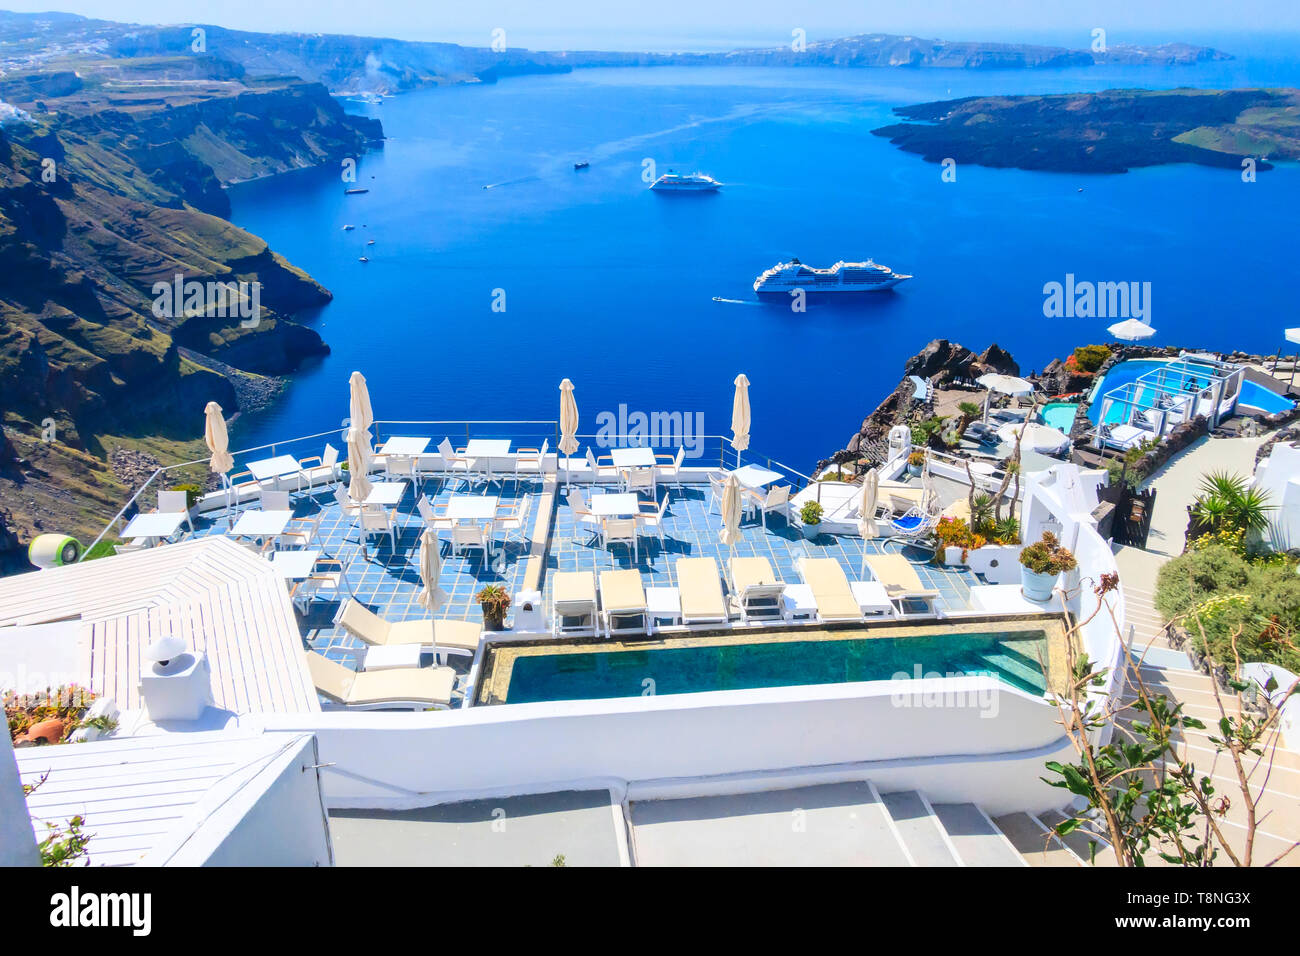 Oia, cafe Tabellen mit Caldera Meerblick in der Santorini Insel mit weißen und blauen Häuser, Griechenland Stockfoto